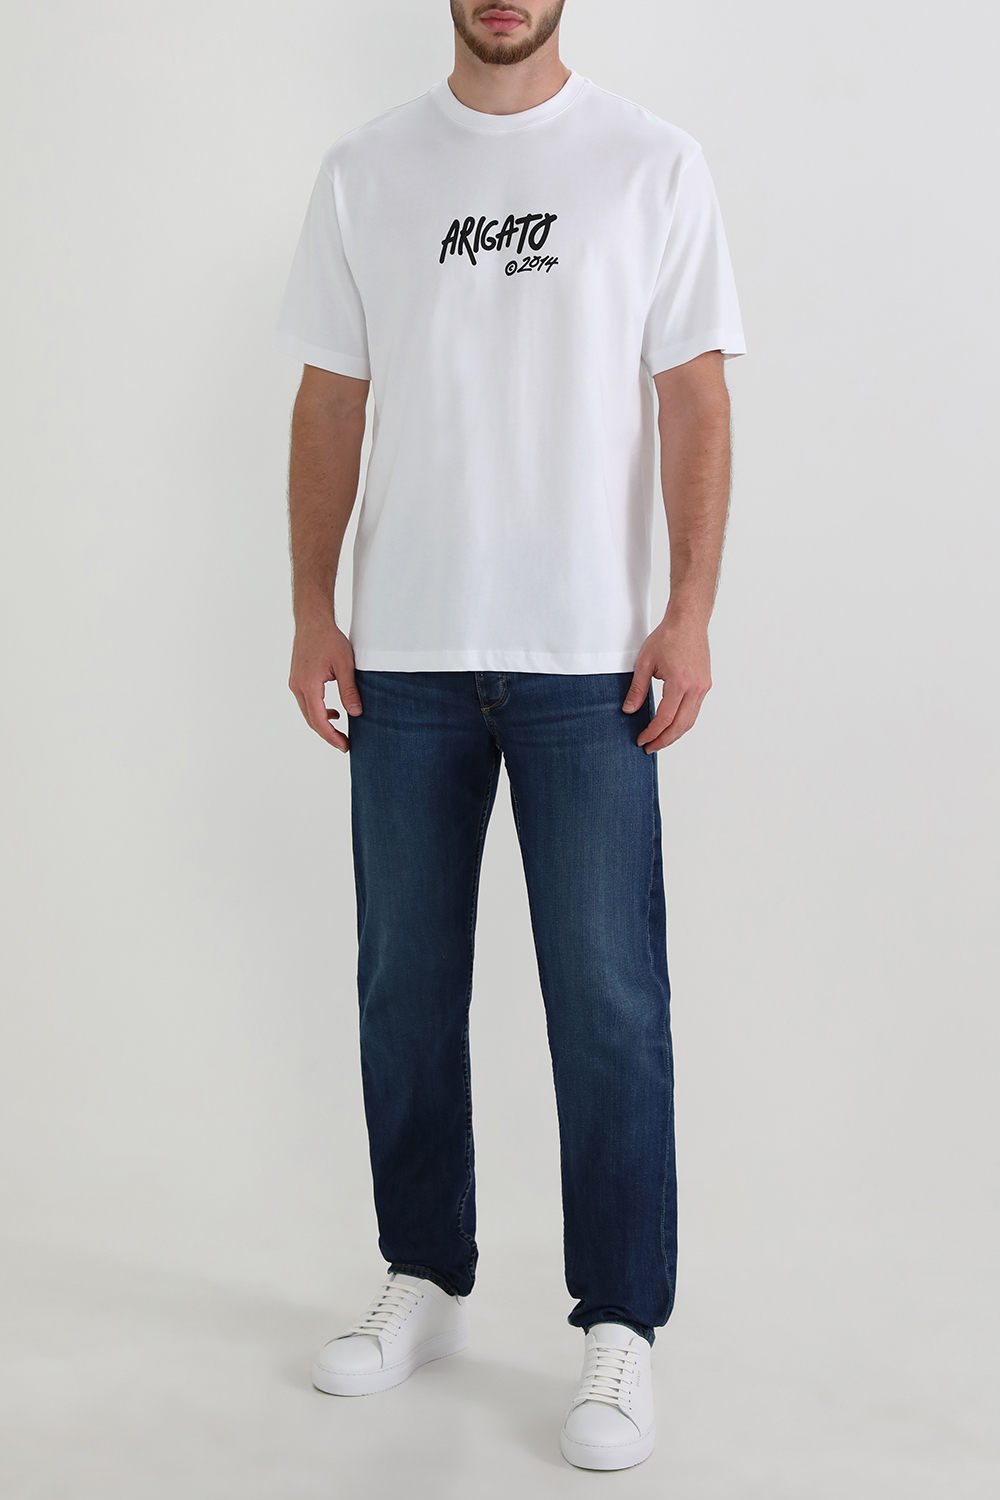 חולצת טי עם הדפס גרפיטי AXEL ARIGATO